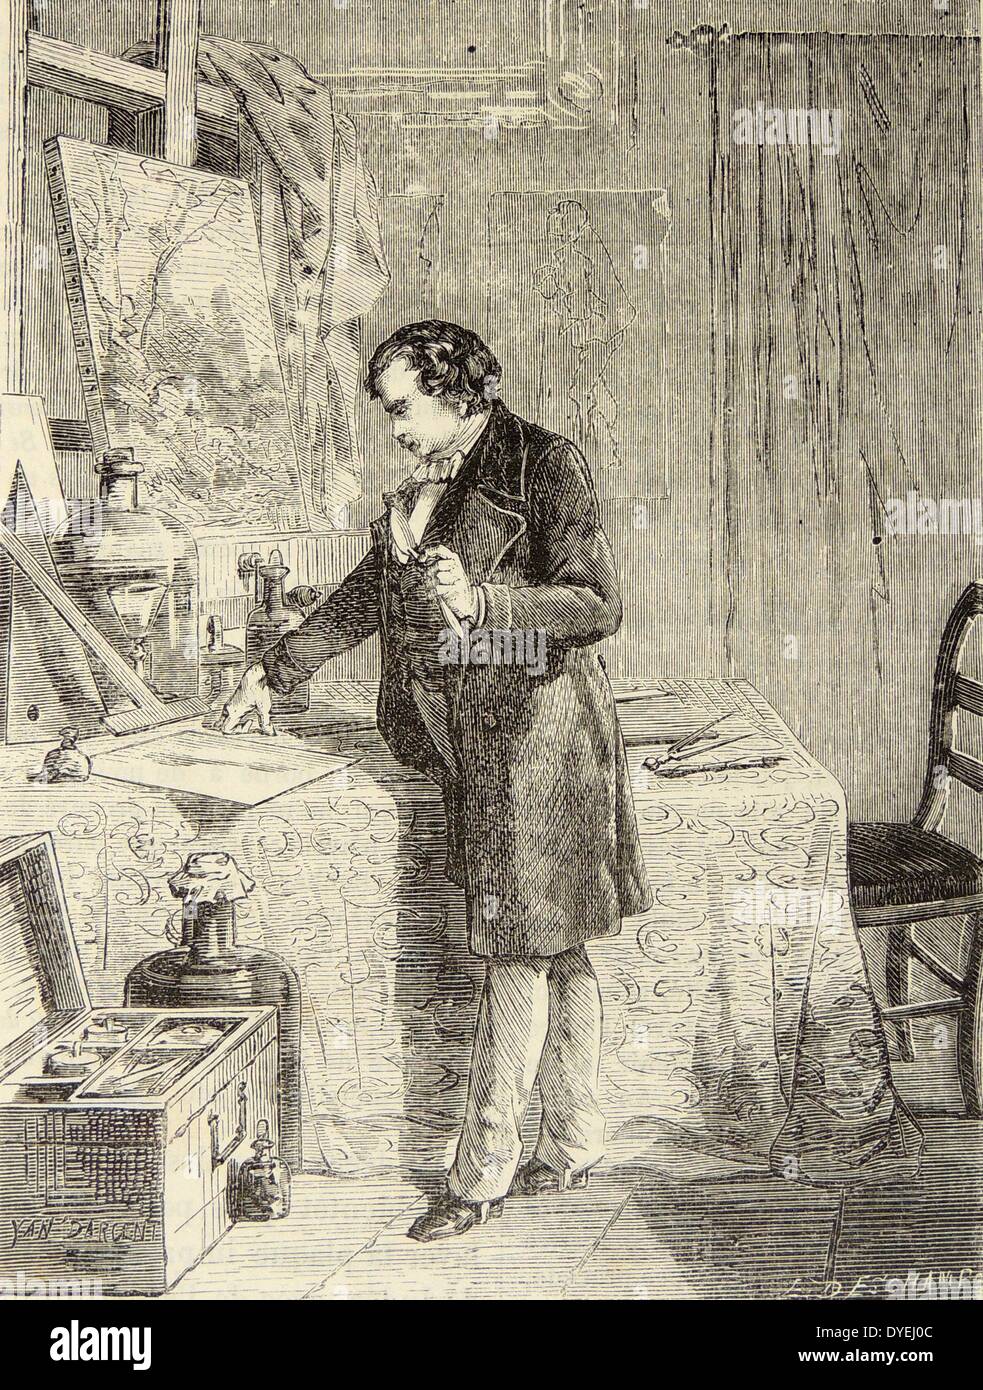 Artista della impressione di Louis Daguerre (1789-1851) francese pioniere della fotografia, scoprendo la sensibilità alla luce di ioduro di argento. Incisione, Parigi, c1870 Foto Stock